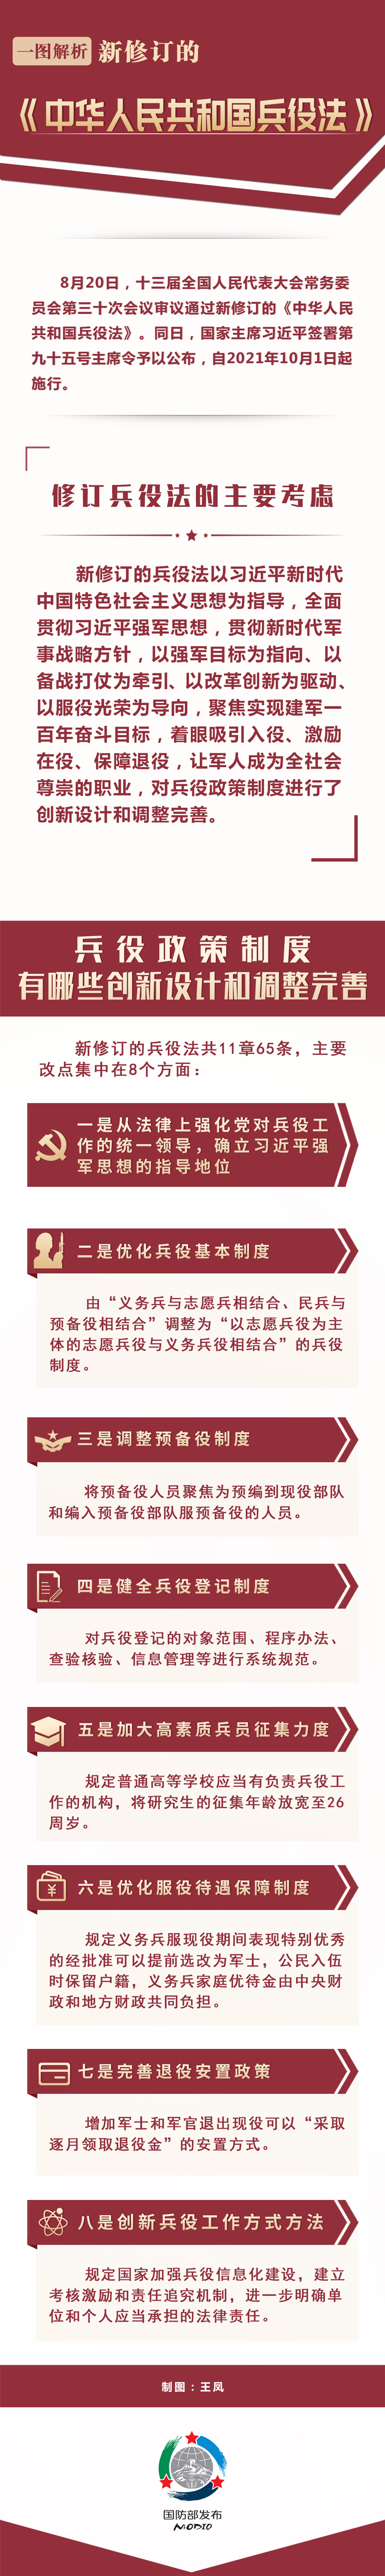 一图解析新修订的《中华人民共和国兵役法》.jpg